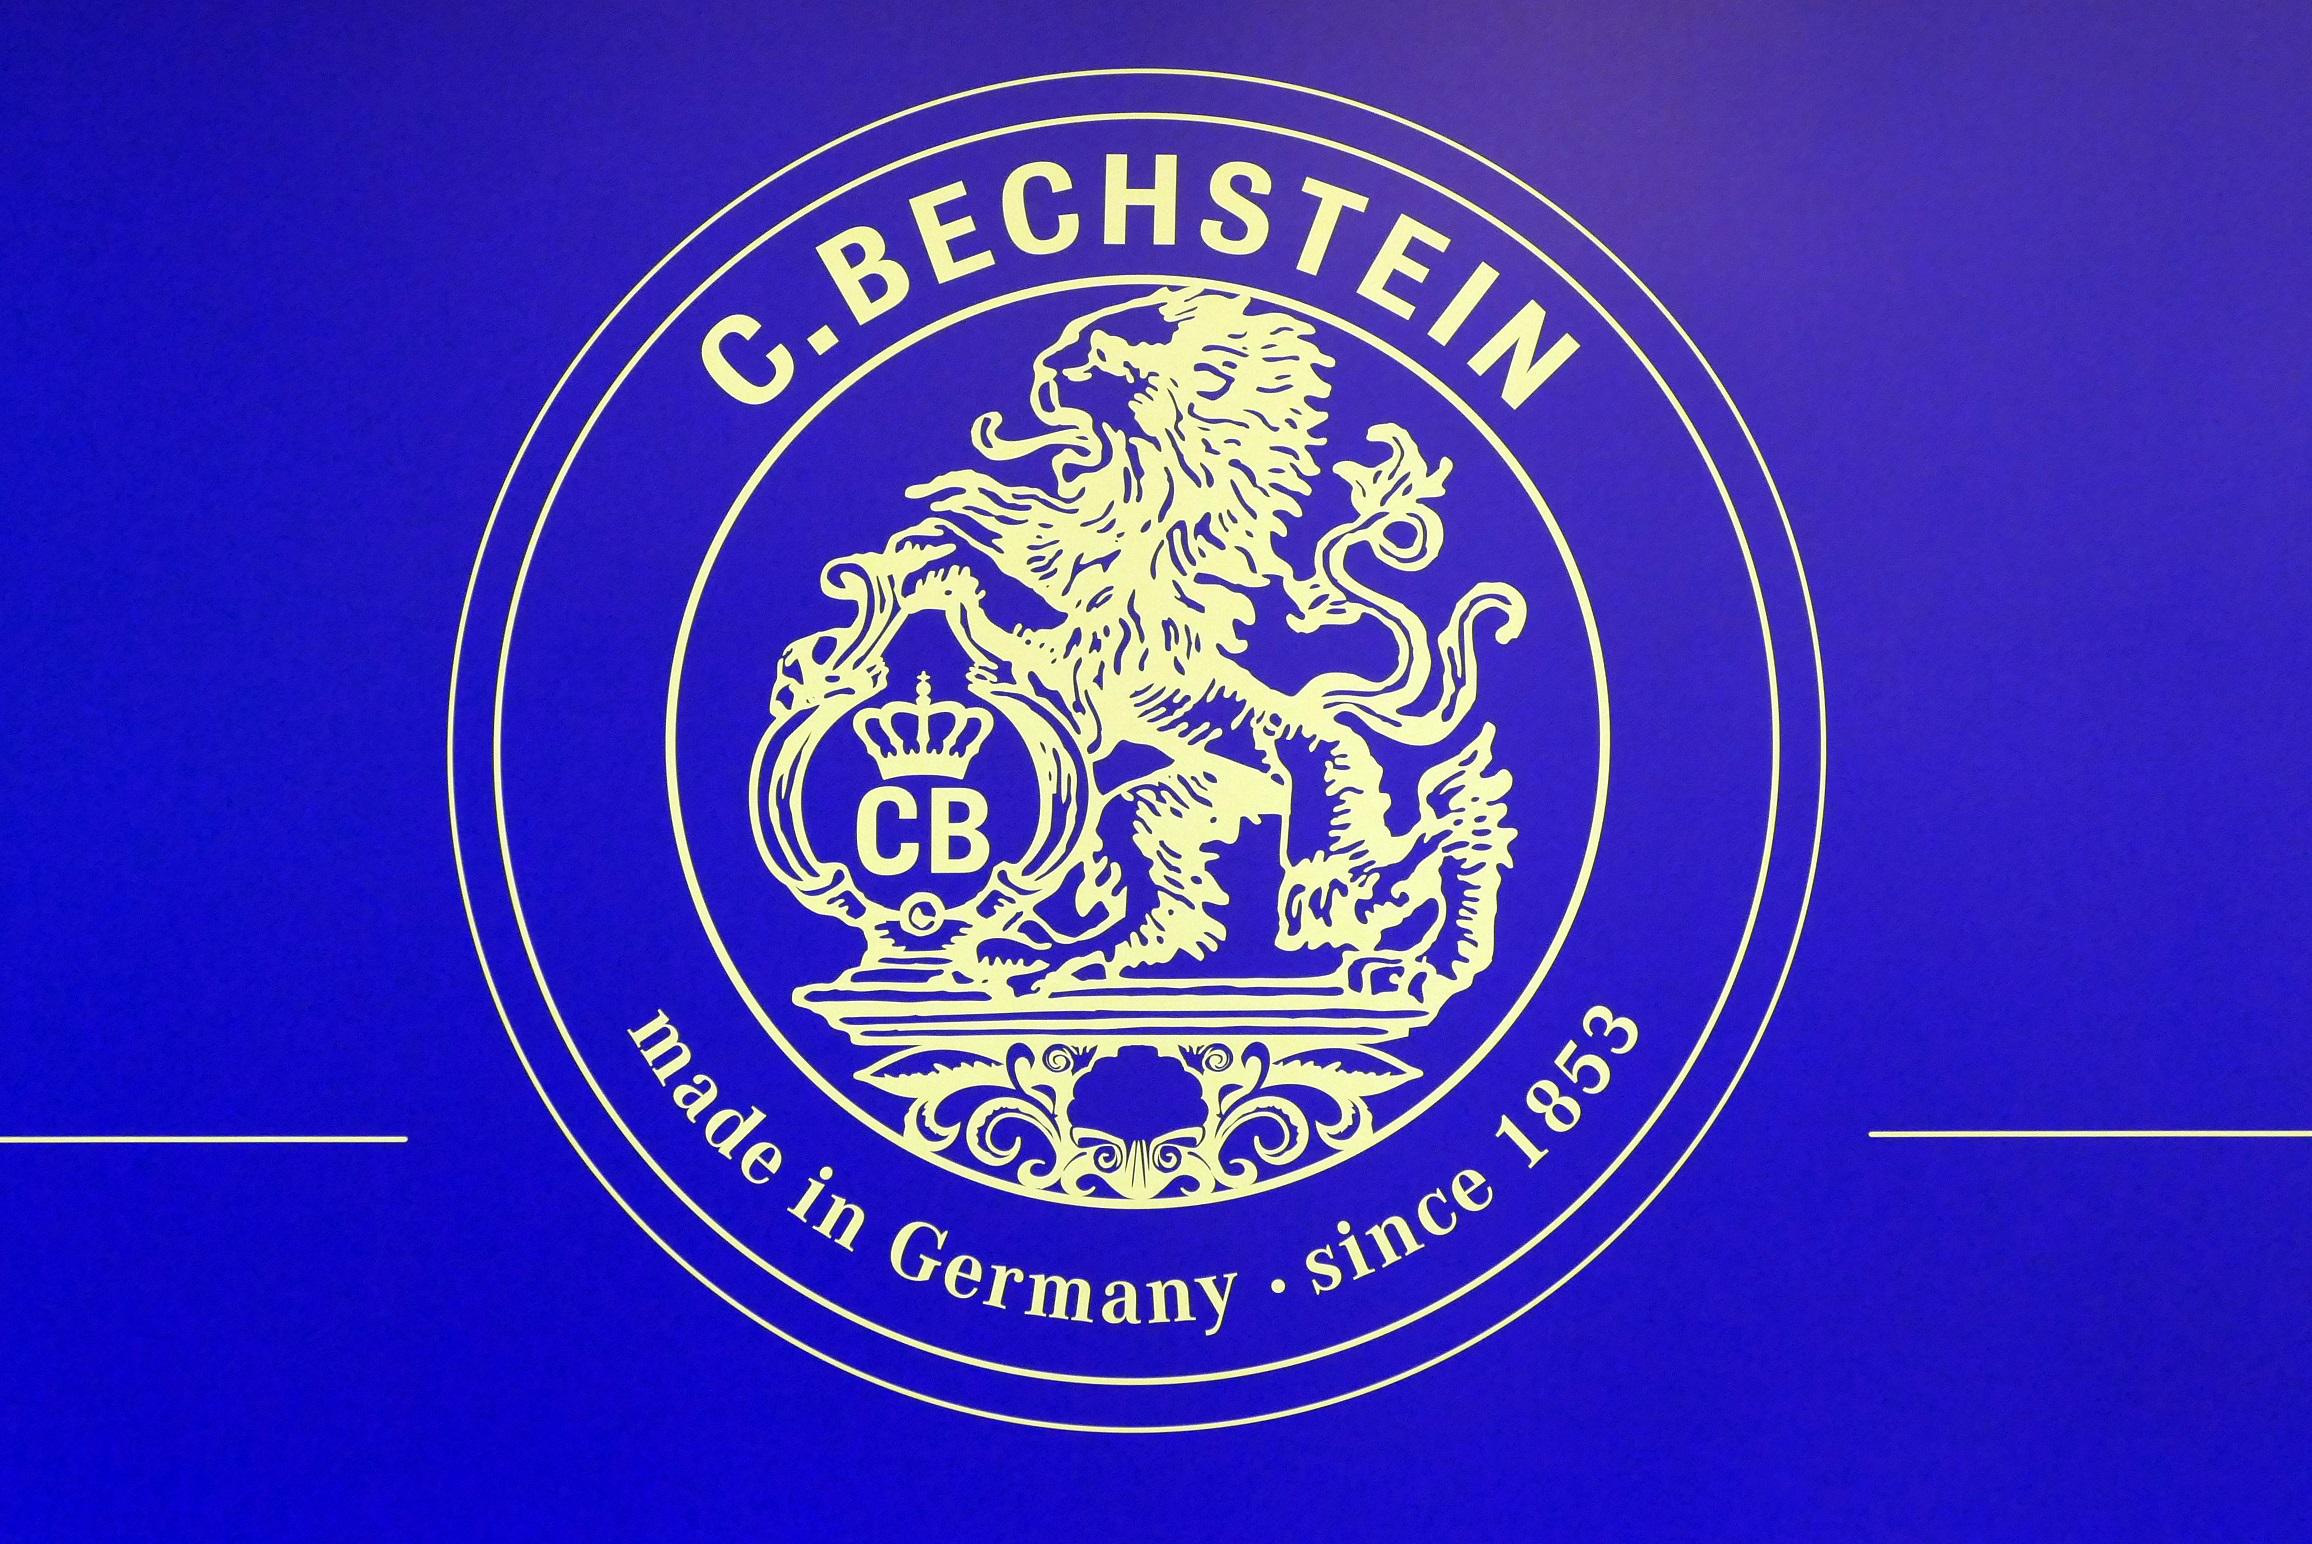 C. Bechstein - schöne Klaviere und Flügel made in Germany.